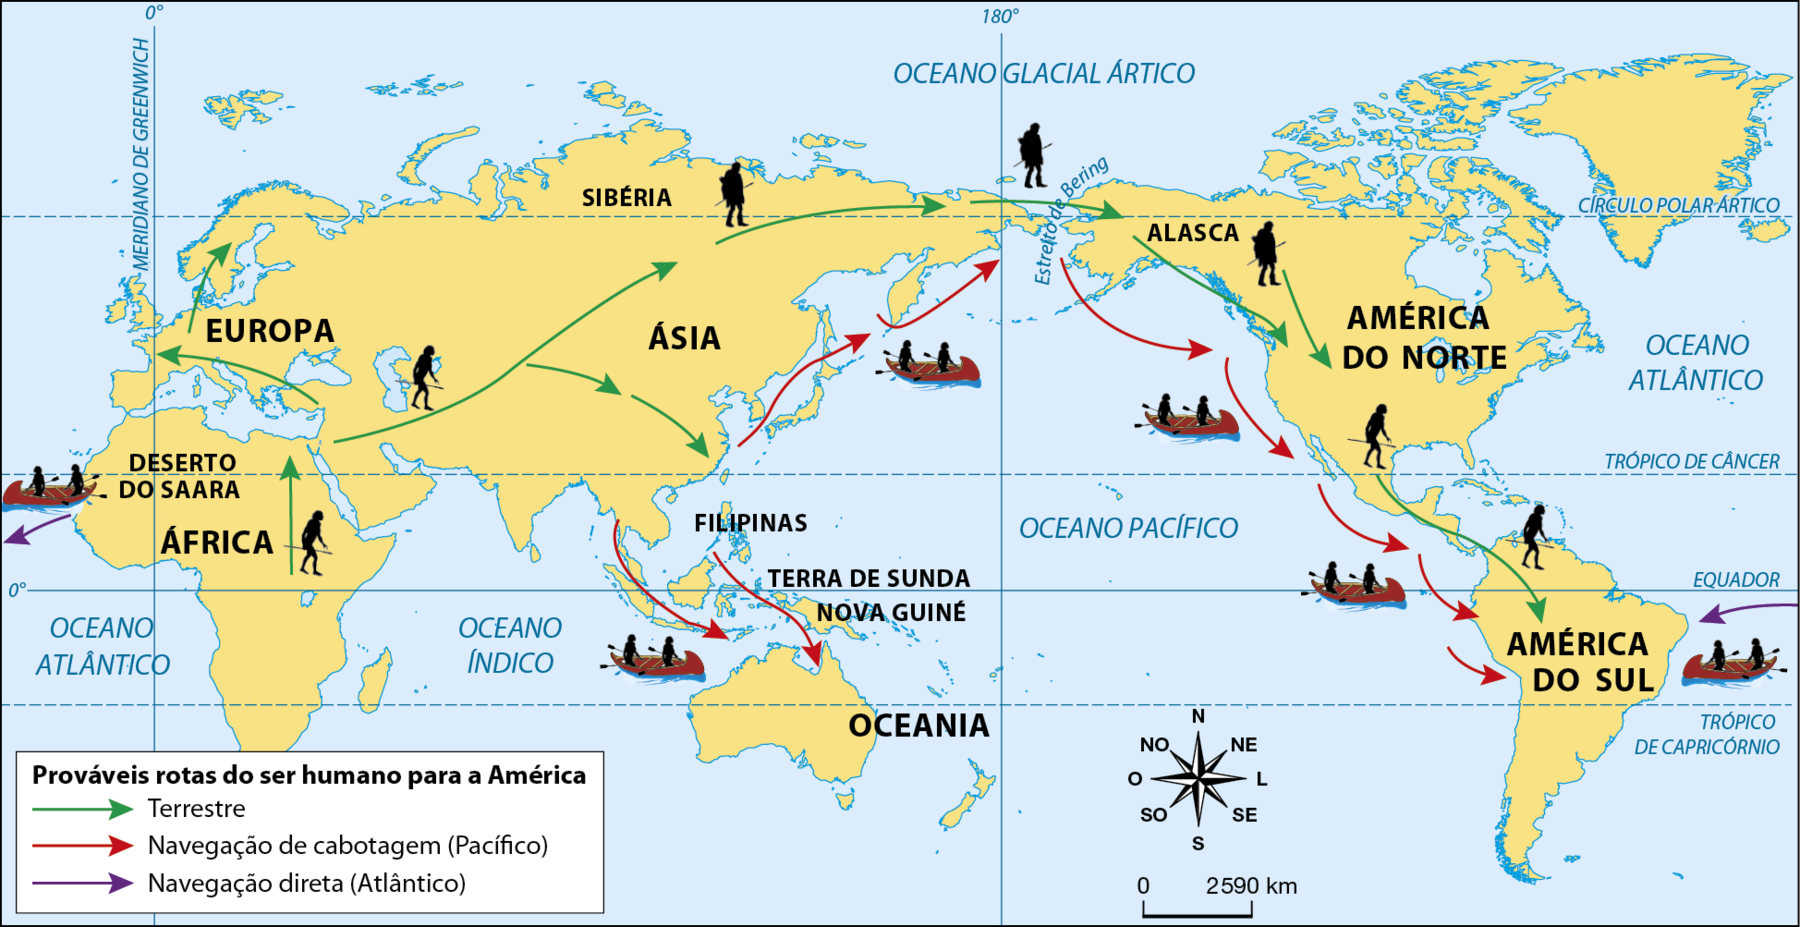 Mapa. Possíveis caminhos do ser humano para a América. Planisfério representando os continentes nessa ordem, da esquerda para a direita: África, Europa, Ásia, Oceania e América. Destaque em texto para o Deserto do Saara, a Sibéria, o Estreito de Bering, o Alasca, as Filipinas, a terra de Sunda, a Nova Guiné, a América do Norte e a América do Sul. Setas verdes indicam, as 'Possíveis rotas' terrestres 'do ser humano para a América'. Setas vermelhas indicam as rotas de 'Navegação de cabotagem (Pacífico)' e setas em lilás indicam a 'Navegação direta (Atlântico)'. Na rota terrestre, em preto, há silhuetas de figuras humanas em pé, com lanças. Nas rotas de navegação por cabotagem, há silhuetas de figuras humanas em pequenas embarcações a remo. Em verde, a rota terrestre possivelmente percorrida pelo ser humano em direção à América, parte da porção nordeste da África, passa a leste do Deserto do Saara e se bifurca. Uma parte segue na direção da Ásia e a outra na direção da Europa. A que segue pela Europa, atravessa o continente europeu e segue em direção à Escandinávia. A que segue pelo  interior do continente asiático no sentido oeste-leste também se bifurca. Uma parte segue em direção ao sudeste da Ásia, enquanto a outra avança para nordeste, pela Sibéria. Da Sibéria, cruza do continente asiático para a América pelo estreito de Bering, próximo ao Oceano Glacial Ártico. Segue, então, pelo Alasca para o sul, desde a América do Norte até a América do Sul. Em vermelho, a rota por navegação de cabotagem parte do litoral do sudeste asiático, da região que hoje compreende a Malásia; pelo Oceano Índico, passa pelas Filipinas, pela Terra de Sunda, pela Nova Guiné e pela região que hoje compreende a Austrália. Outra seta vermelha, partindo do litoral da região que hoje compreende a China, segue na direção norte pelo Oceano Pacífico, atravessando o Mar do Japão atingindo a Península de Kamchatka e o Mar de Bering, chegando até a costa oeste da América do Norte,  atravessando a região das Ilhas Aleutas, no Alasca, e seguindo em direção ao Sul, navegando pela costa oeste da América do Norte até atingir a América do Sul. Em roxo, a rota por navegação direta parte da costa da África banhada pelo Oceano Atlântico, atravessando o oceano em direção à costa da América do Sul, banhada pelo mesmo Oceano. Na parte inferior do mapa, rosa dos ventos e escala de 0 a 2500 quilômetros.